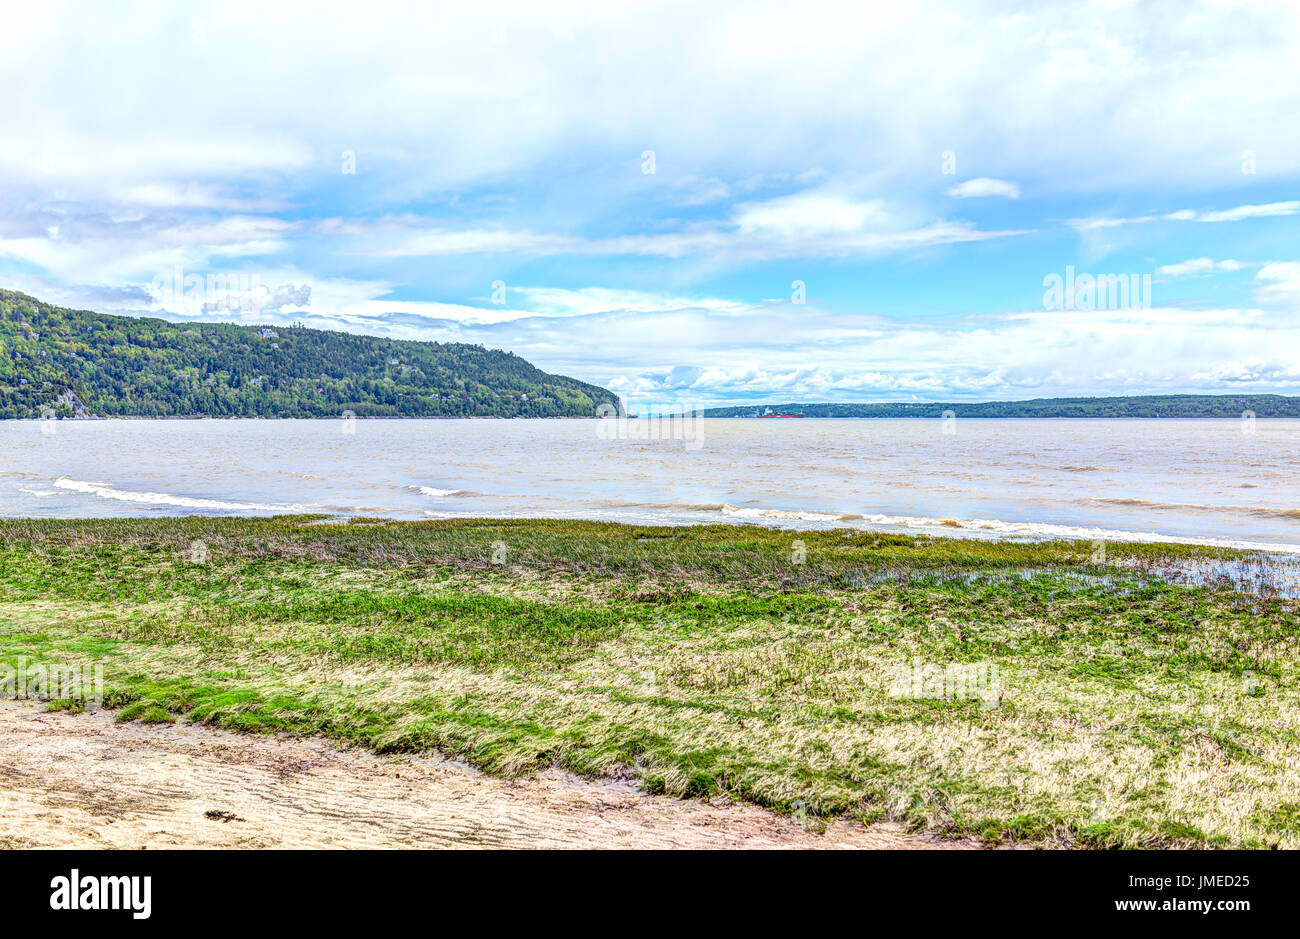 Baie-Saint-Paul au Québec, Canada et l'autre rive de la plage avec des vagues et de l'herbe verte Banque D'Images